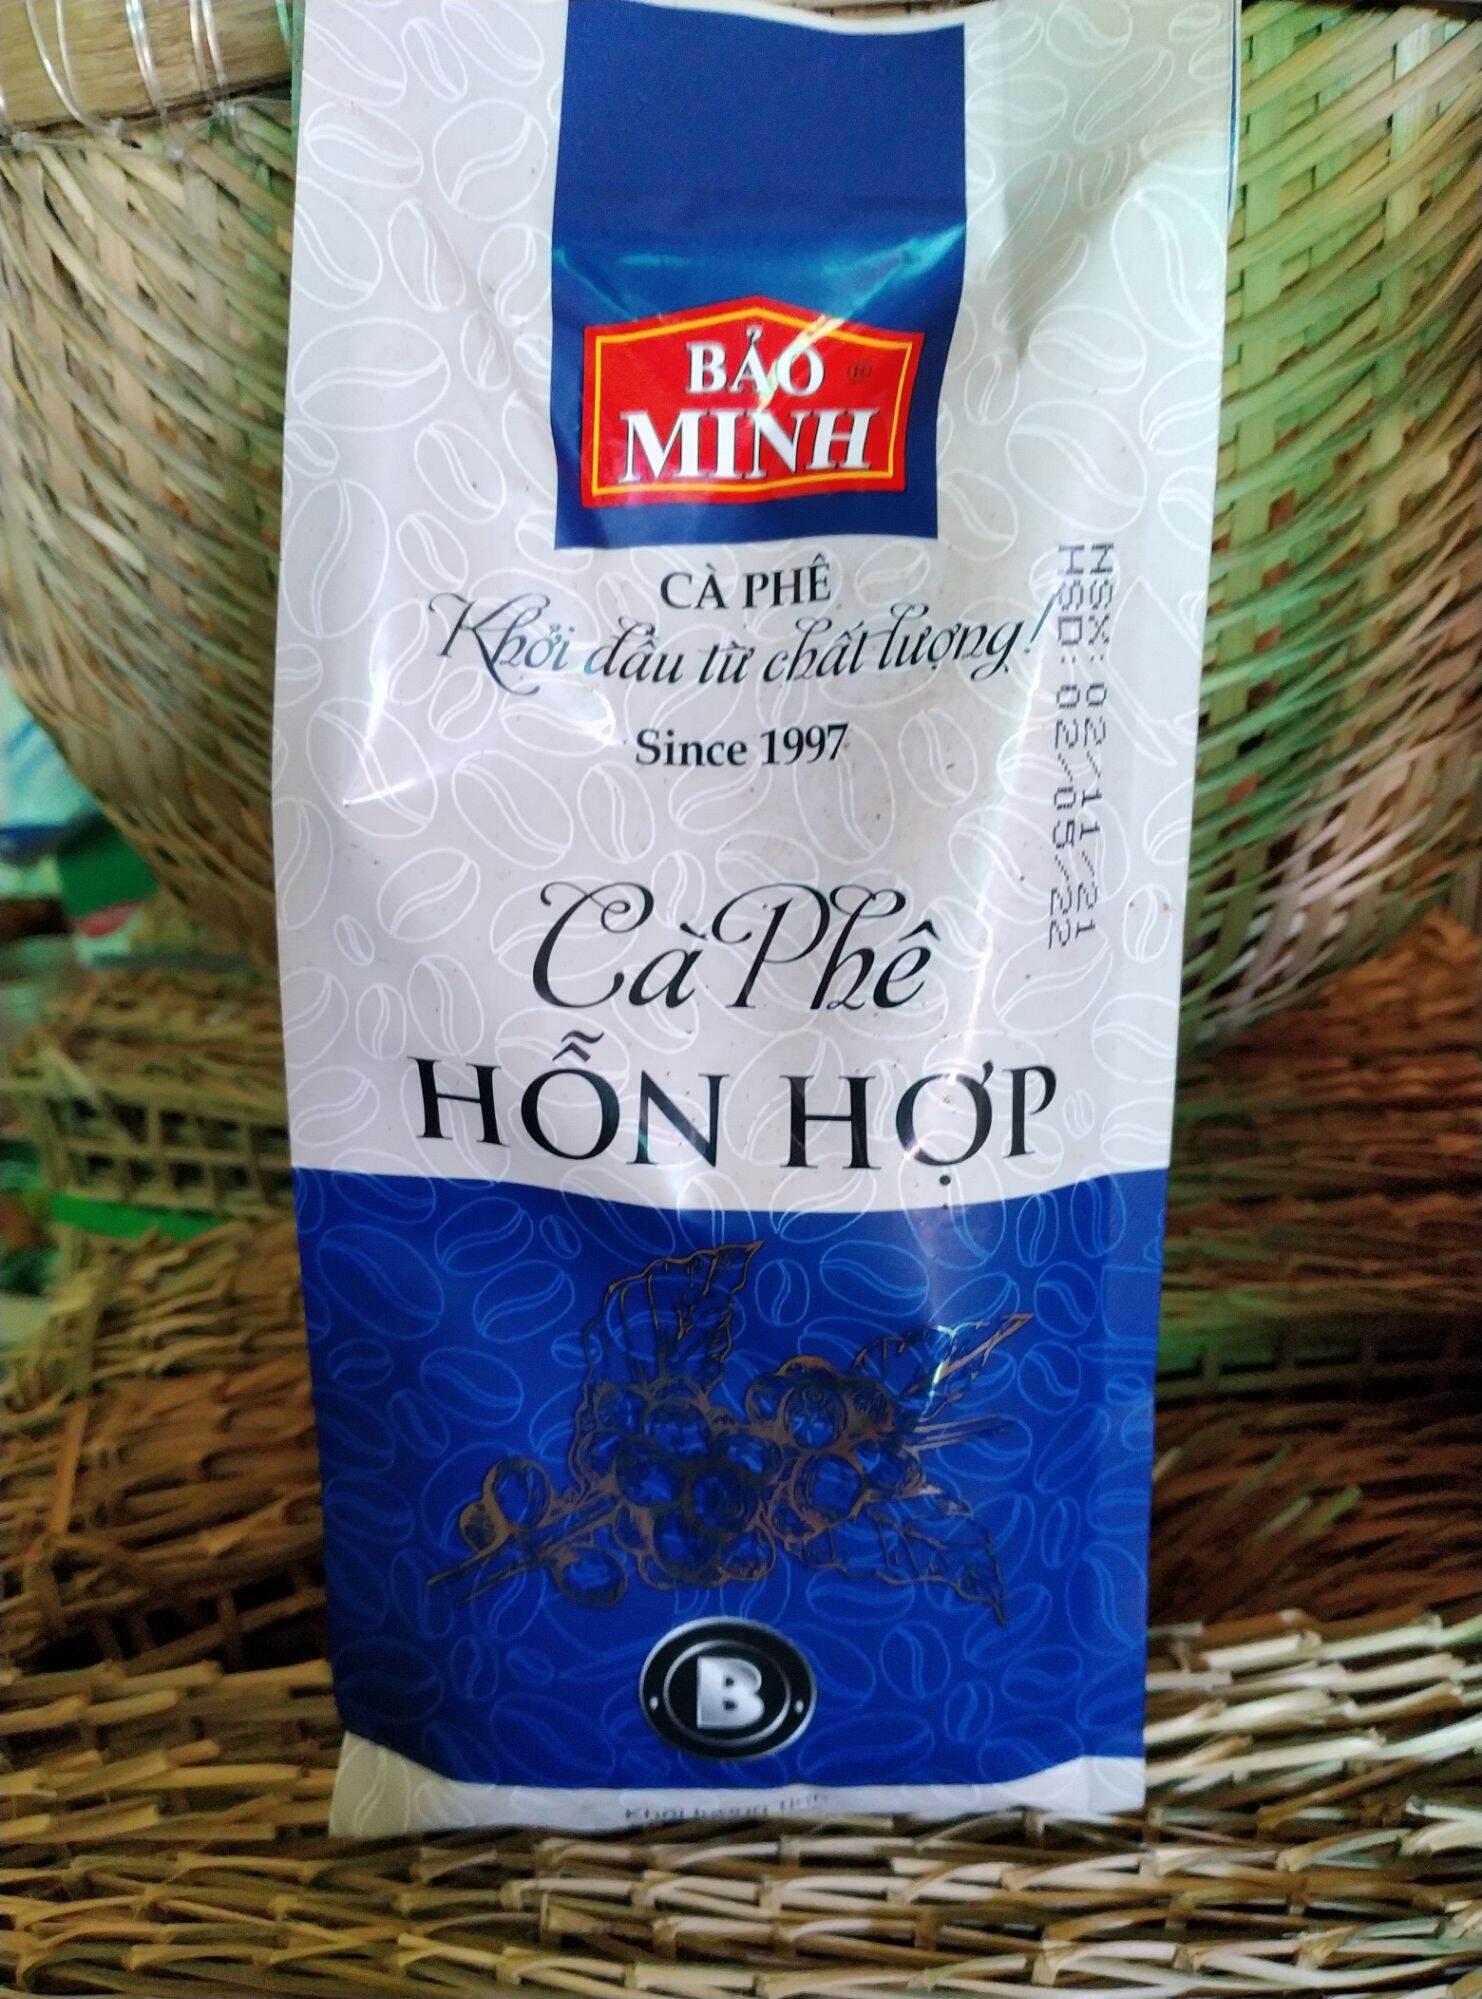 Cà phê Bảo Minh loại B túi 500g